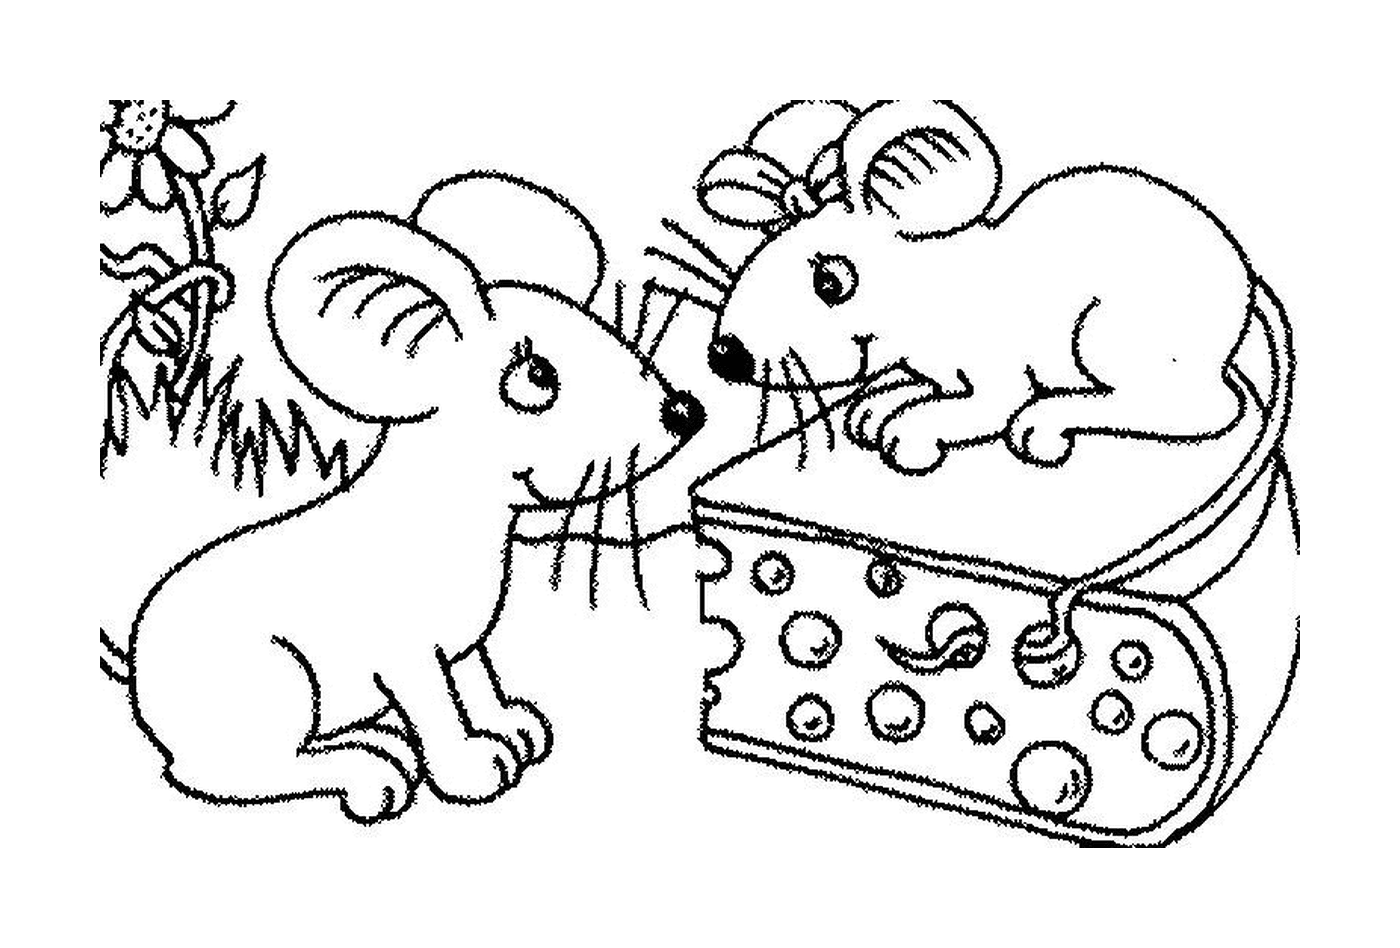  两只老鼠和一块奶酪 